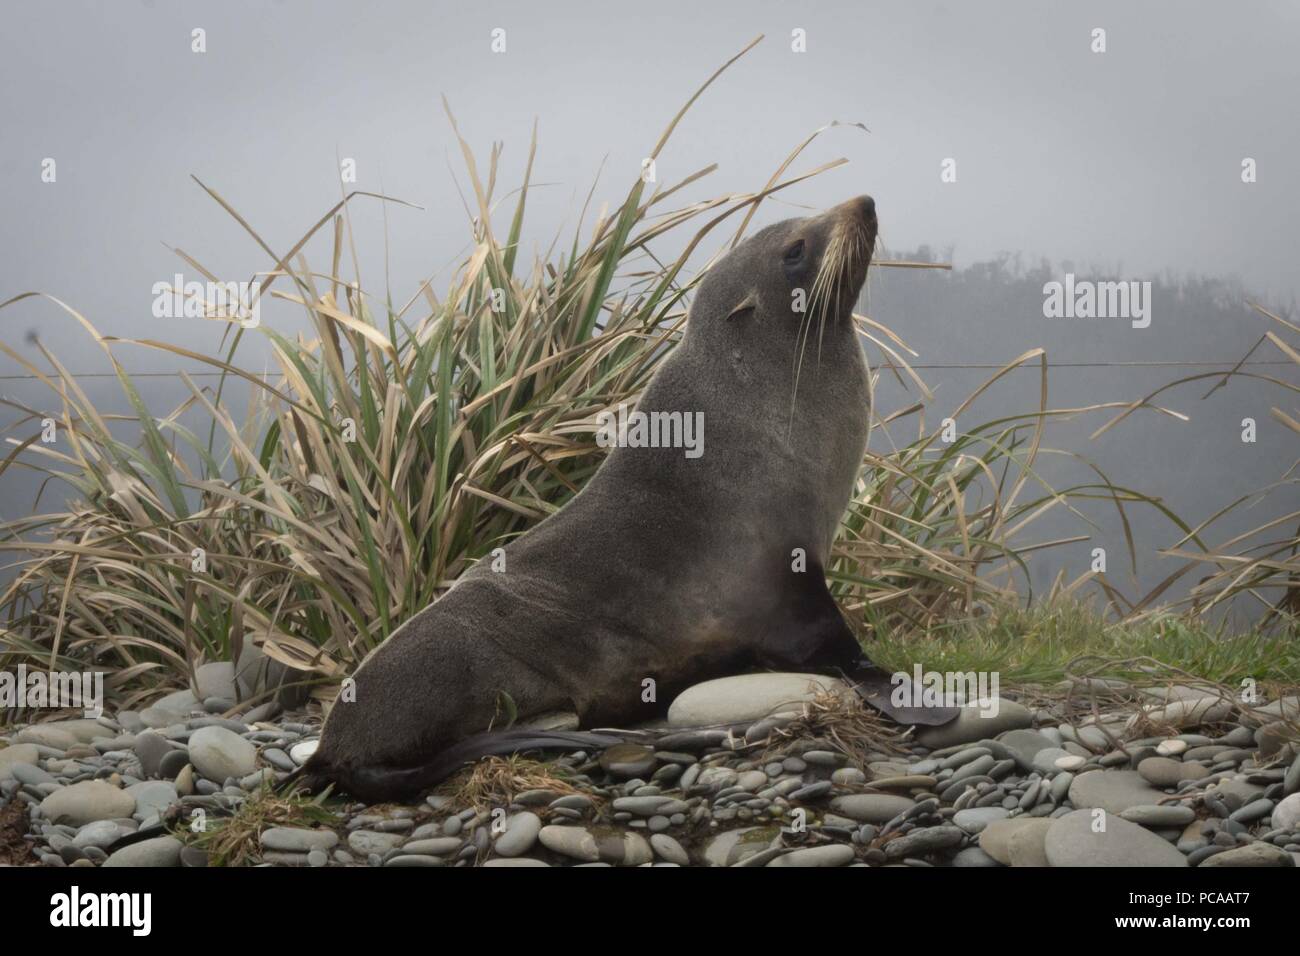 New Zealand Fur Seal sunning itself on the beach Stock Photo